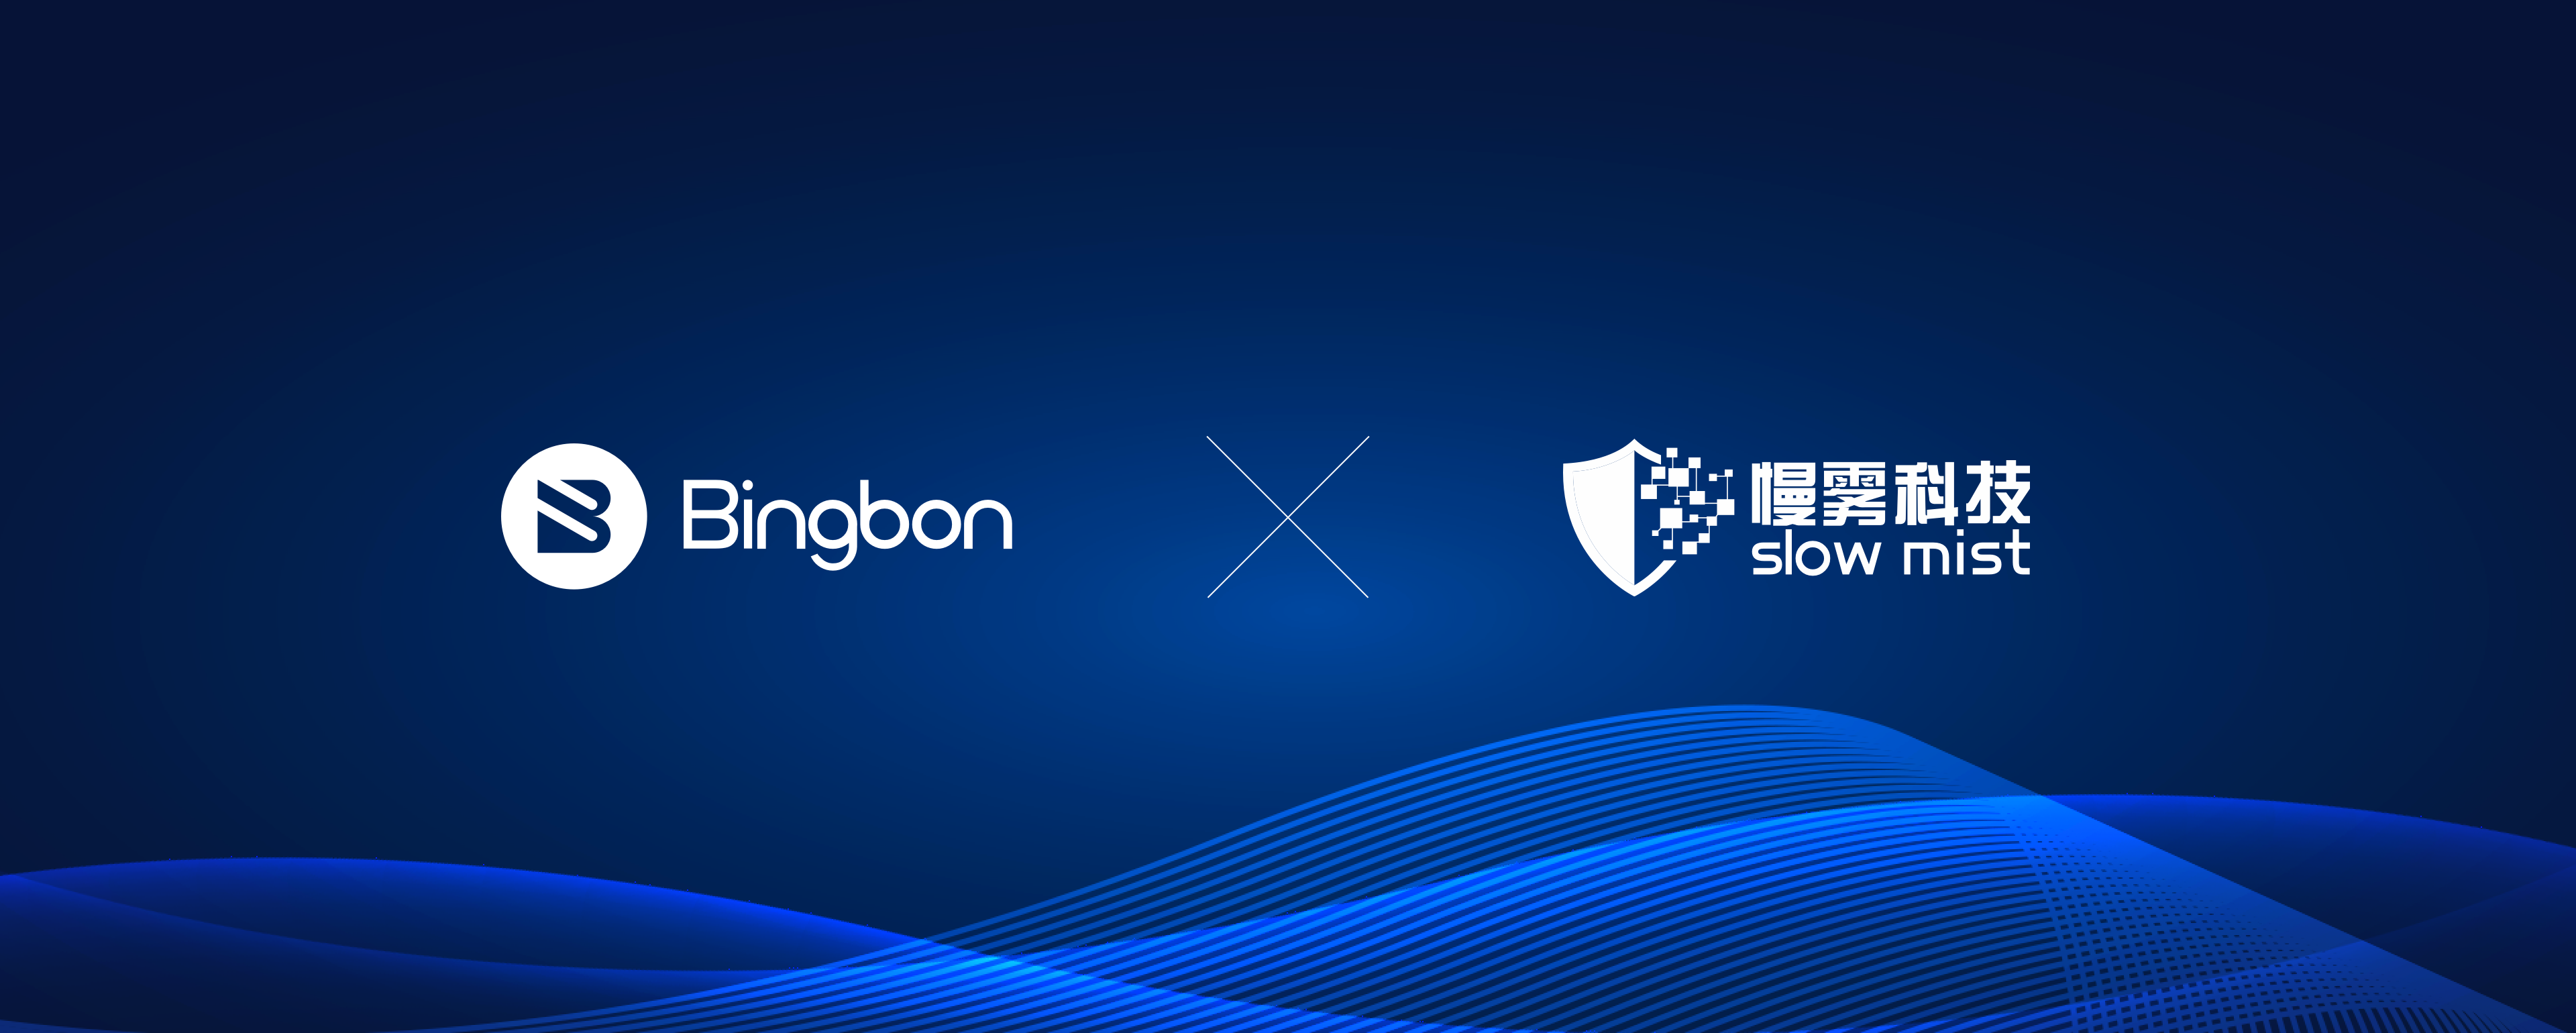 Bingbon与慢雾科技达成安全战略合作